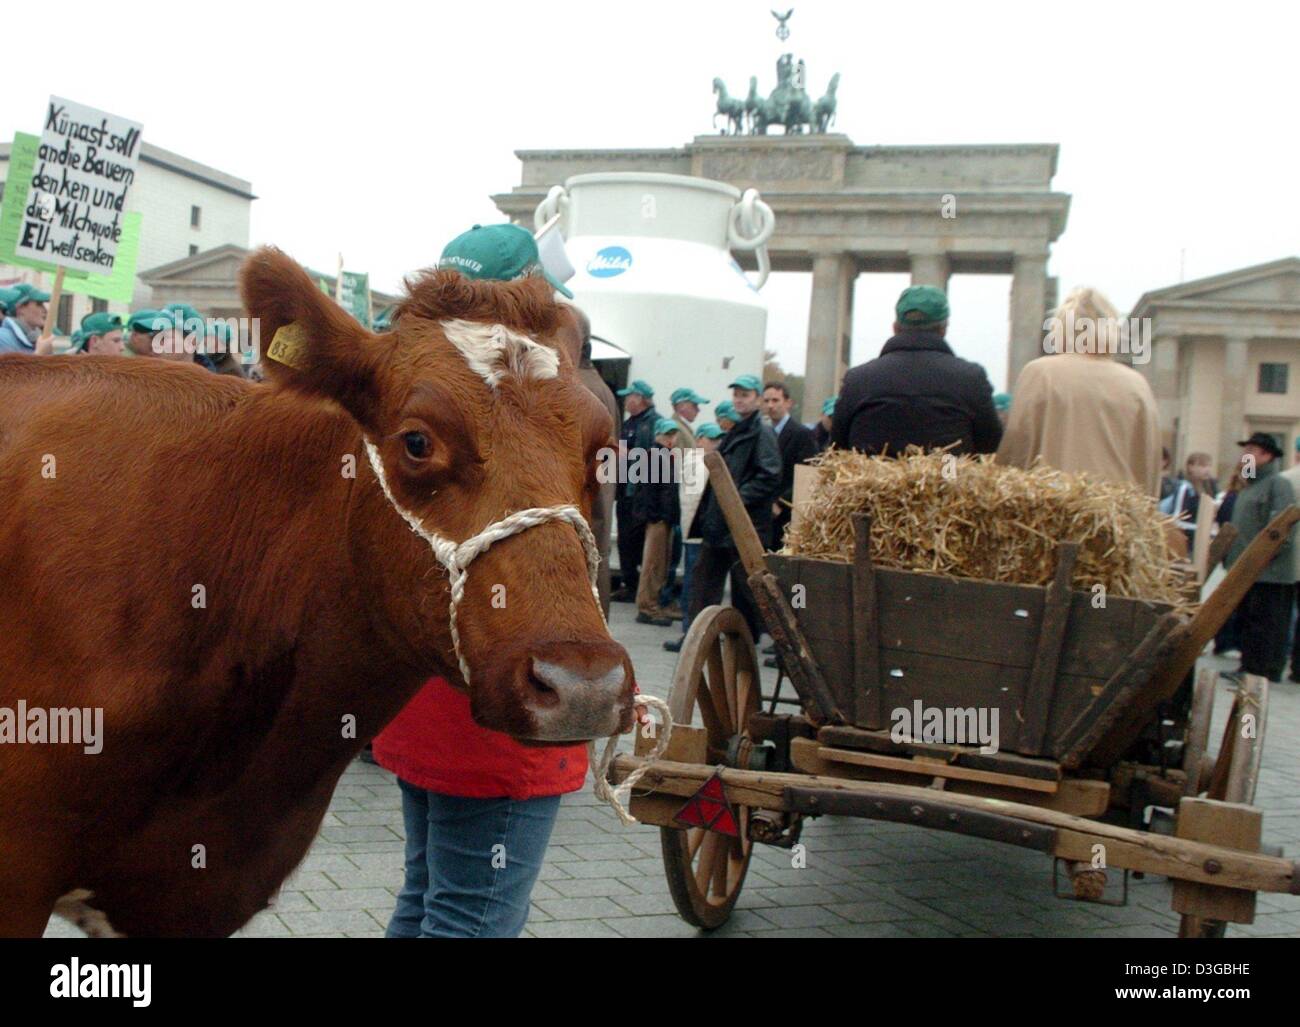 (Dpa) - Landwirte aus dem Bundesland Hessen protestieren gegen niedrige Milchpreise mit Kühen vor dem Brandenburger Tor in Berlin, Deutschland, 28. Oktober 2004. Die Demonstranten fordern eine Reduzierung der europaweiten Milchquote um Überproduktion zu stoppen. Nach der Demonstranten gefährden die niedrigen Preise der Lebensunterhalt von vielen Milchbauern. Stockfoto